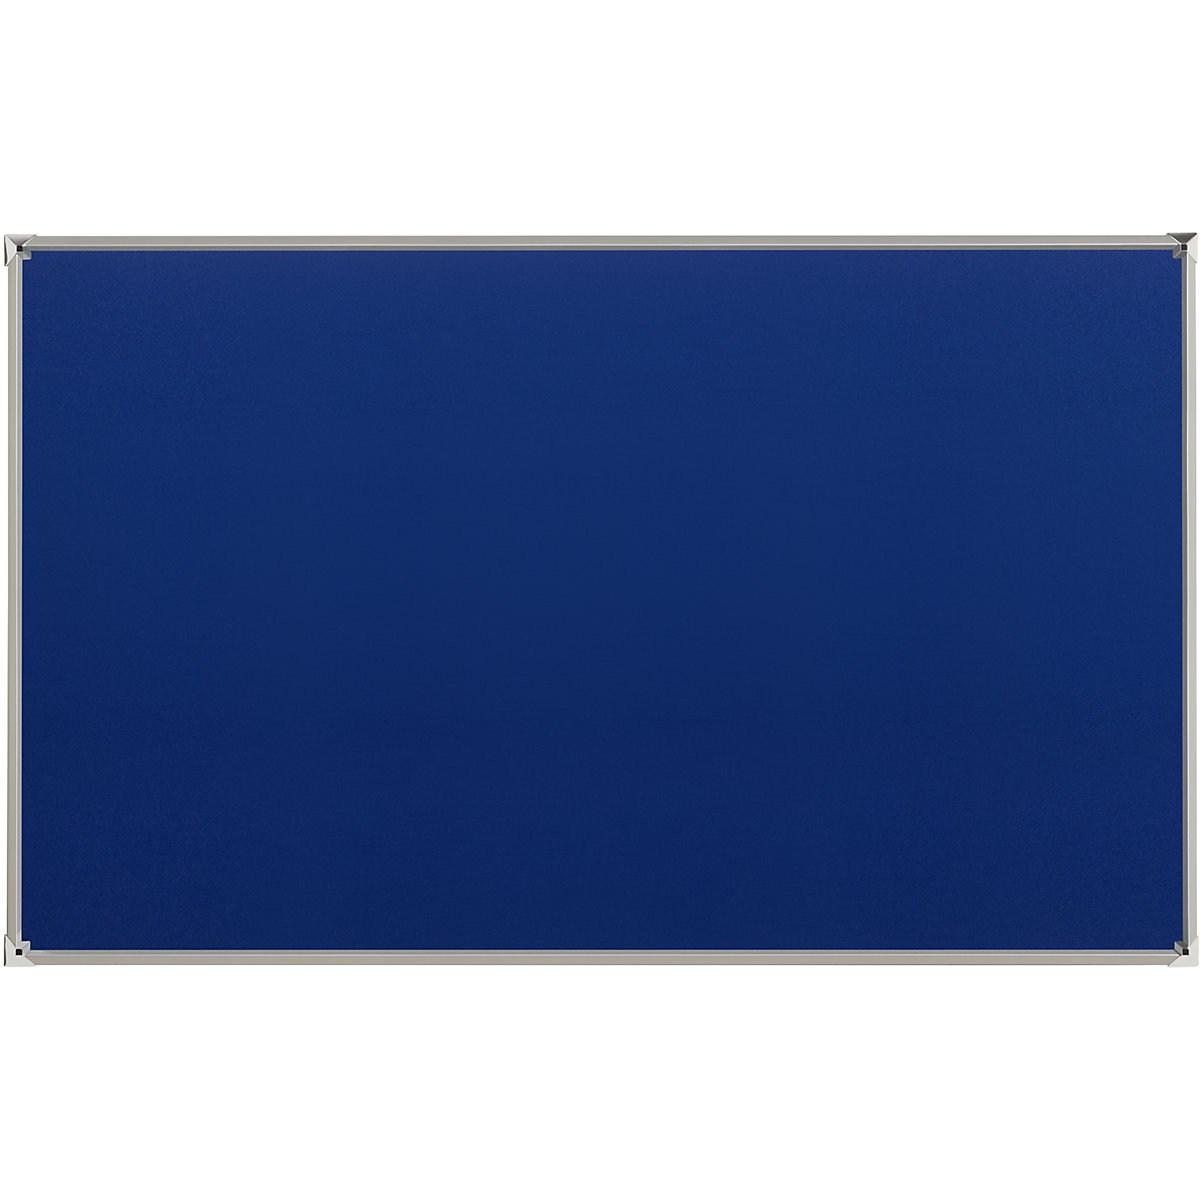 Oglasna ploča s aluminijskim okvirom – eurokraft pro, presvlaka od tkanine, u plavoj boji, ŠxV 1800 x 1200 mm-4